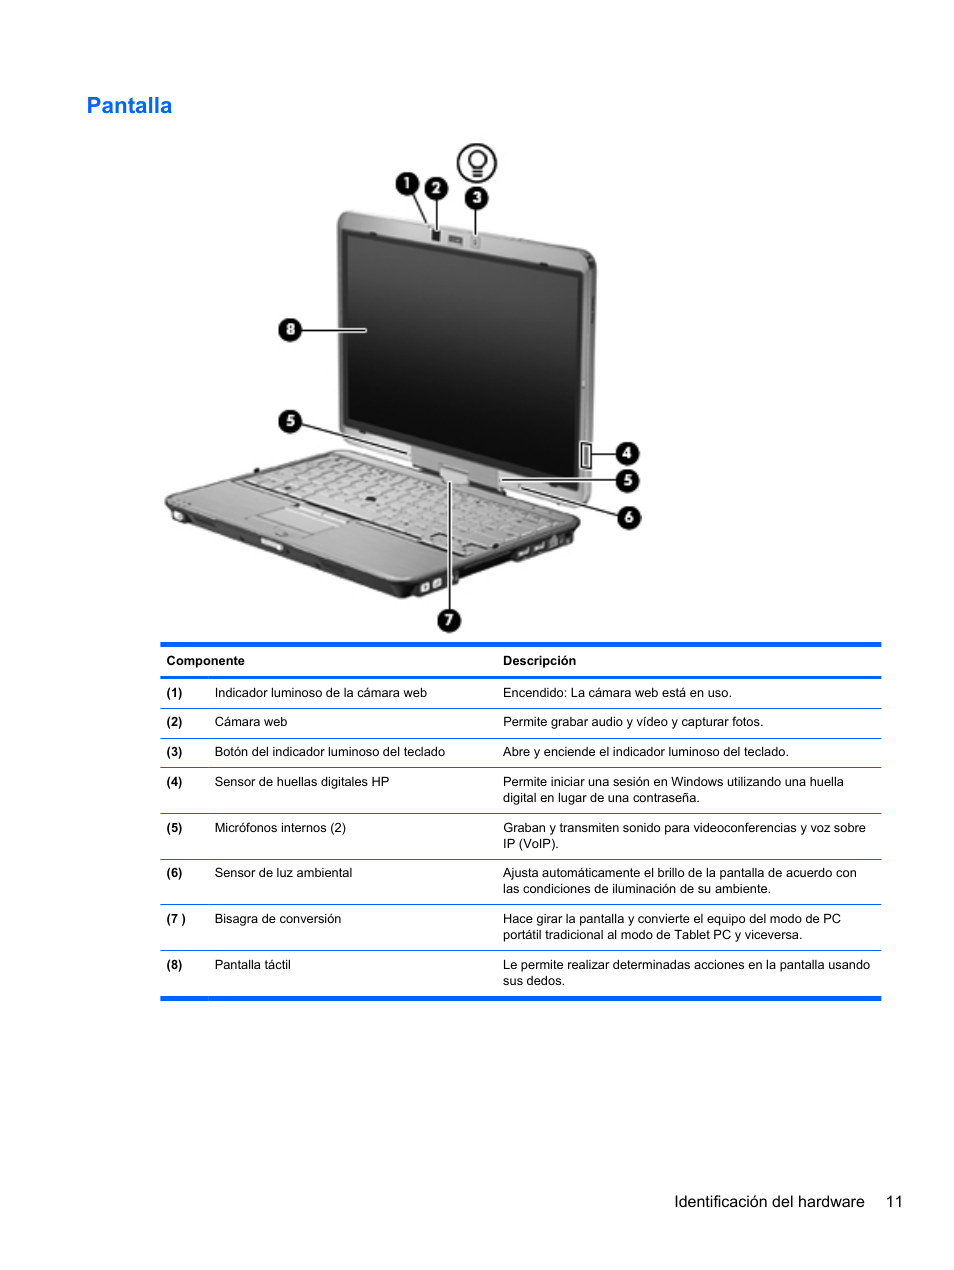 Pantalla | HP PC Tablet HP EliteBook 2740p Manual del usuario | Página 23 / 193